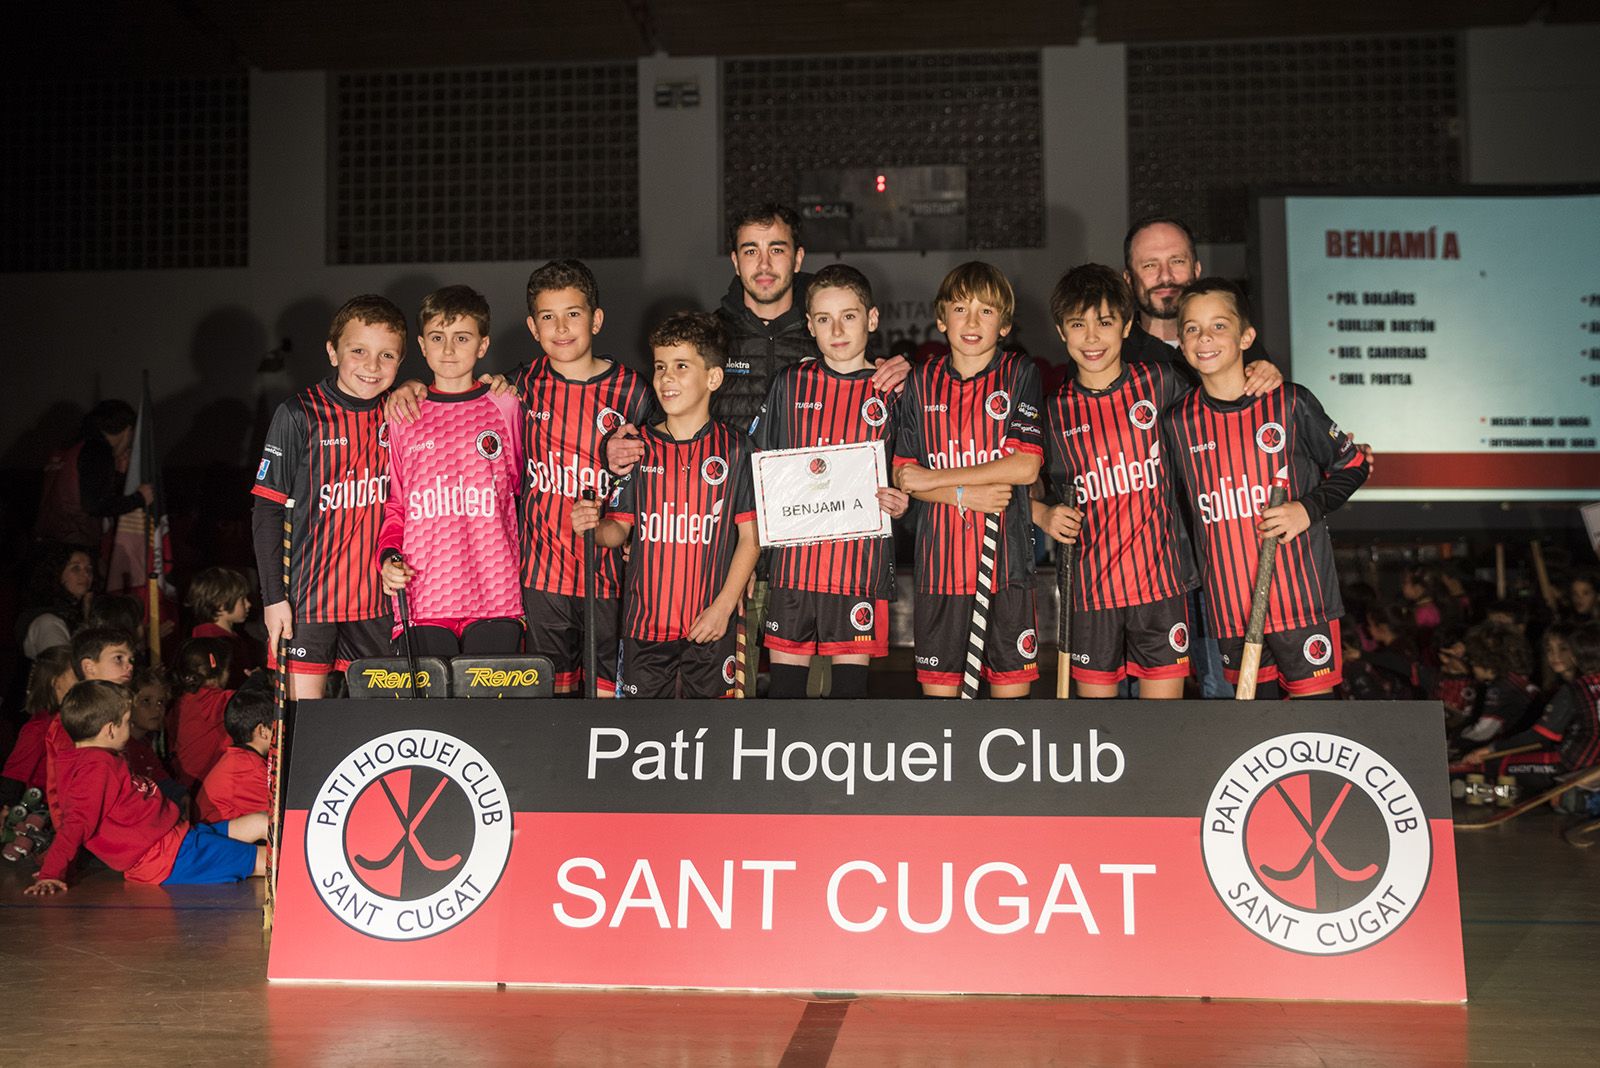 Presentació d'equips del Solideo Patí Hoquei Club Sant Cugat. FOTO: Bernat Millet